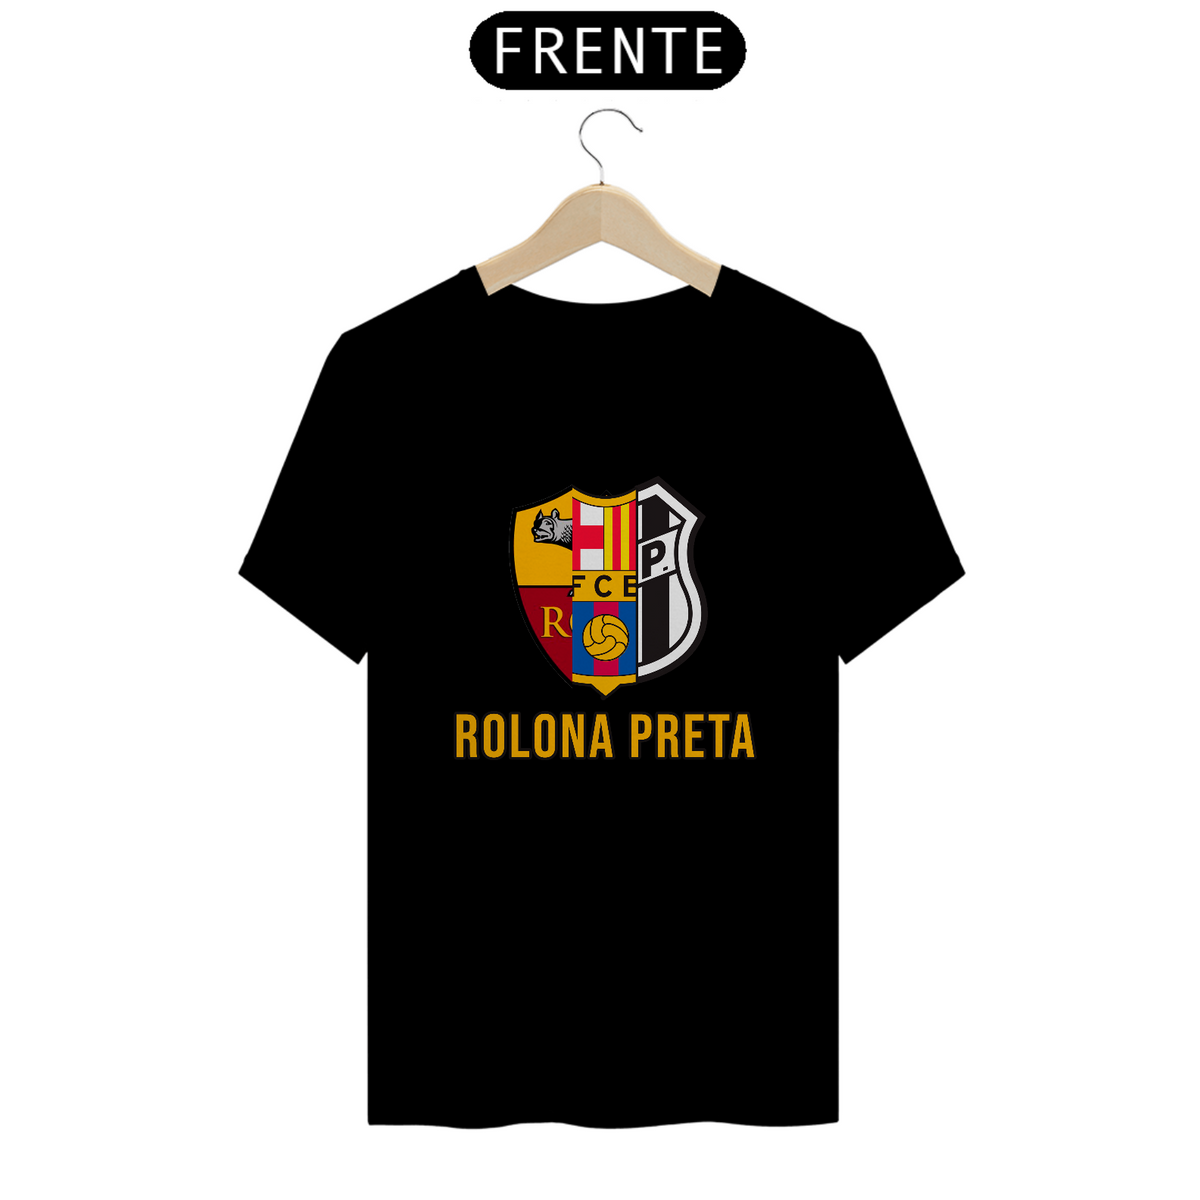 Nome do produto: Camiseta Rolona Preta